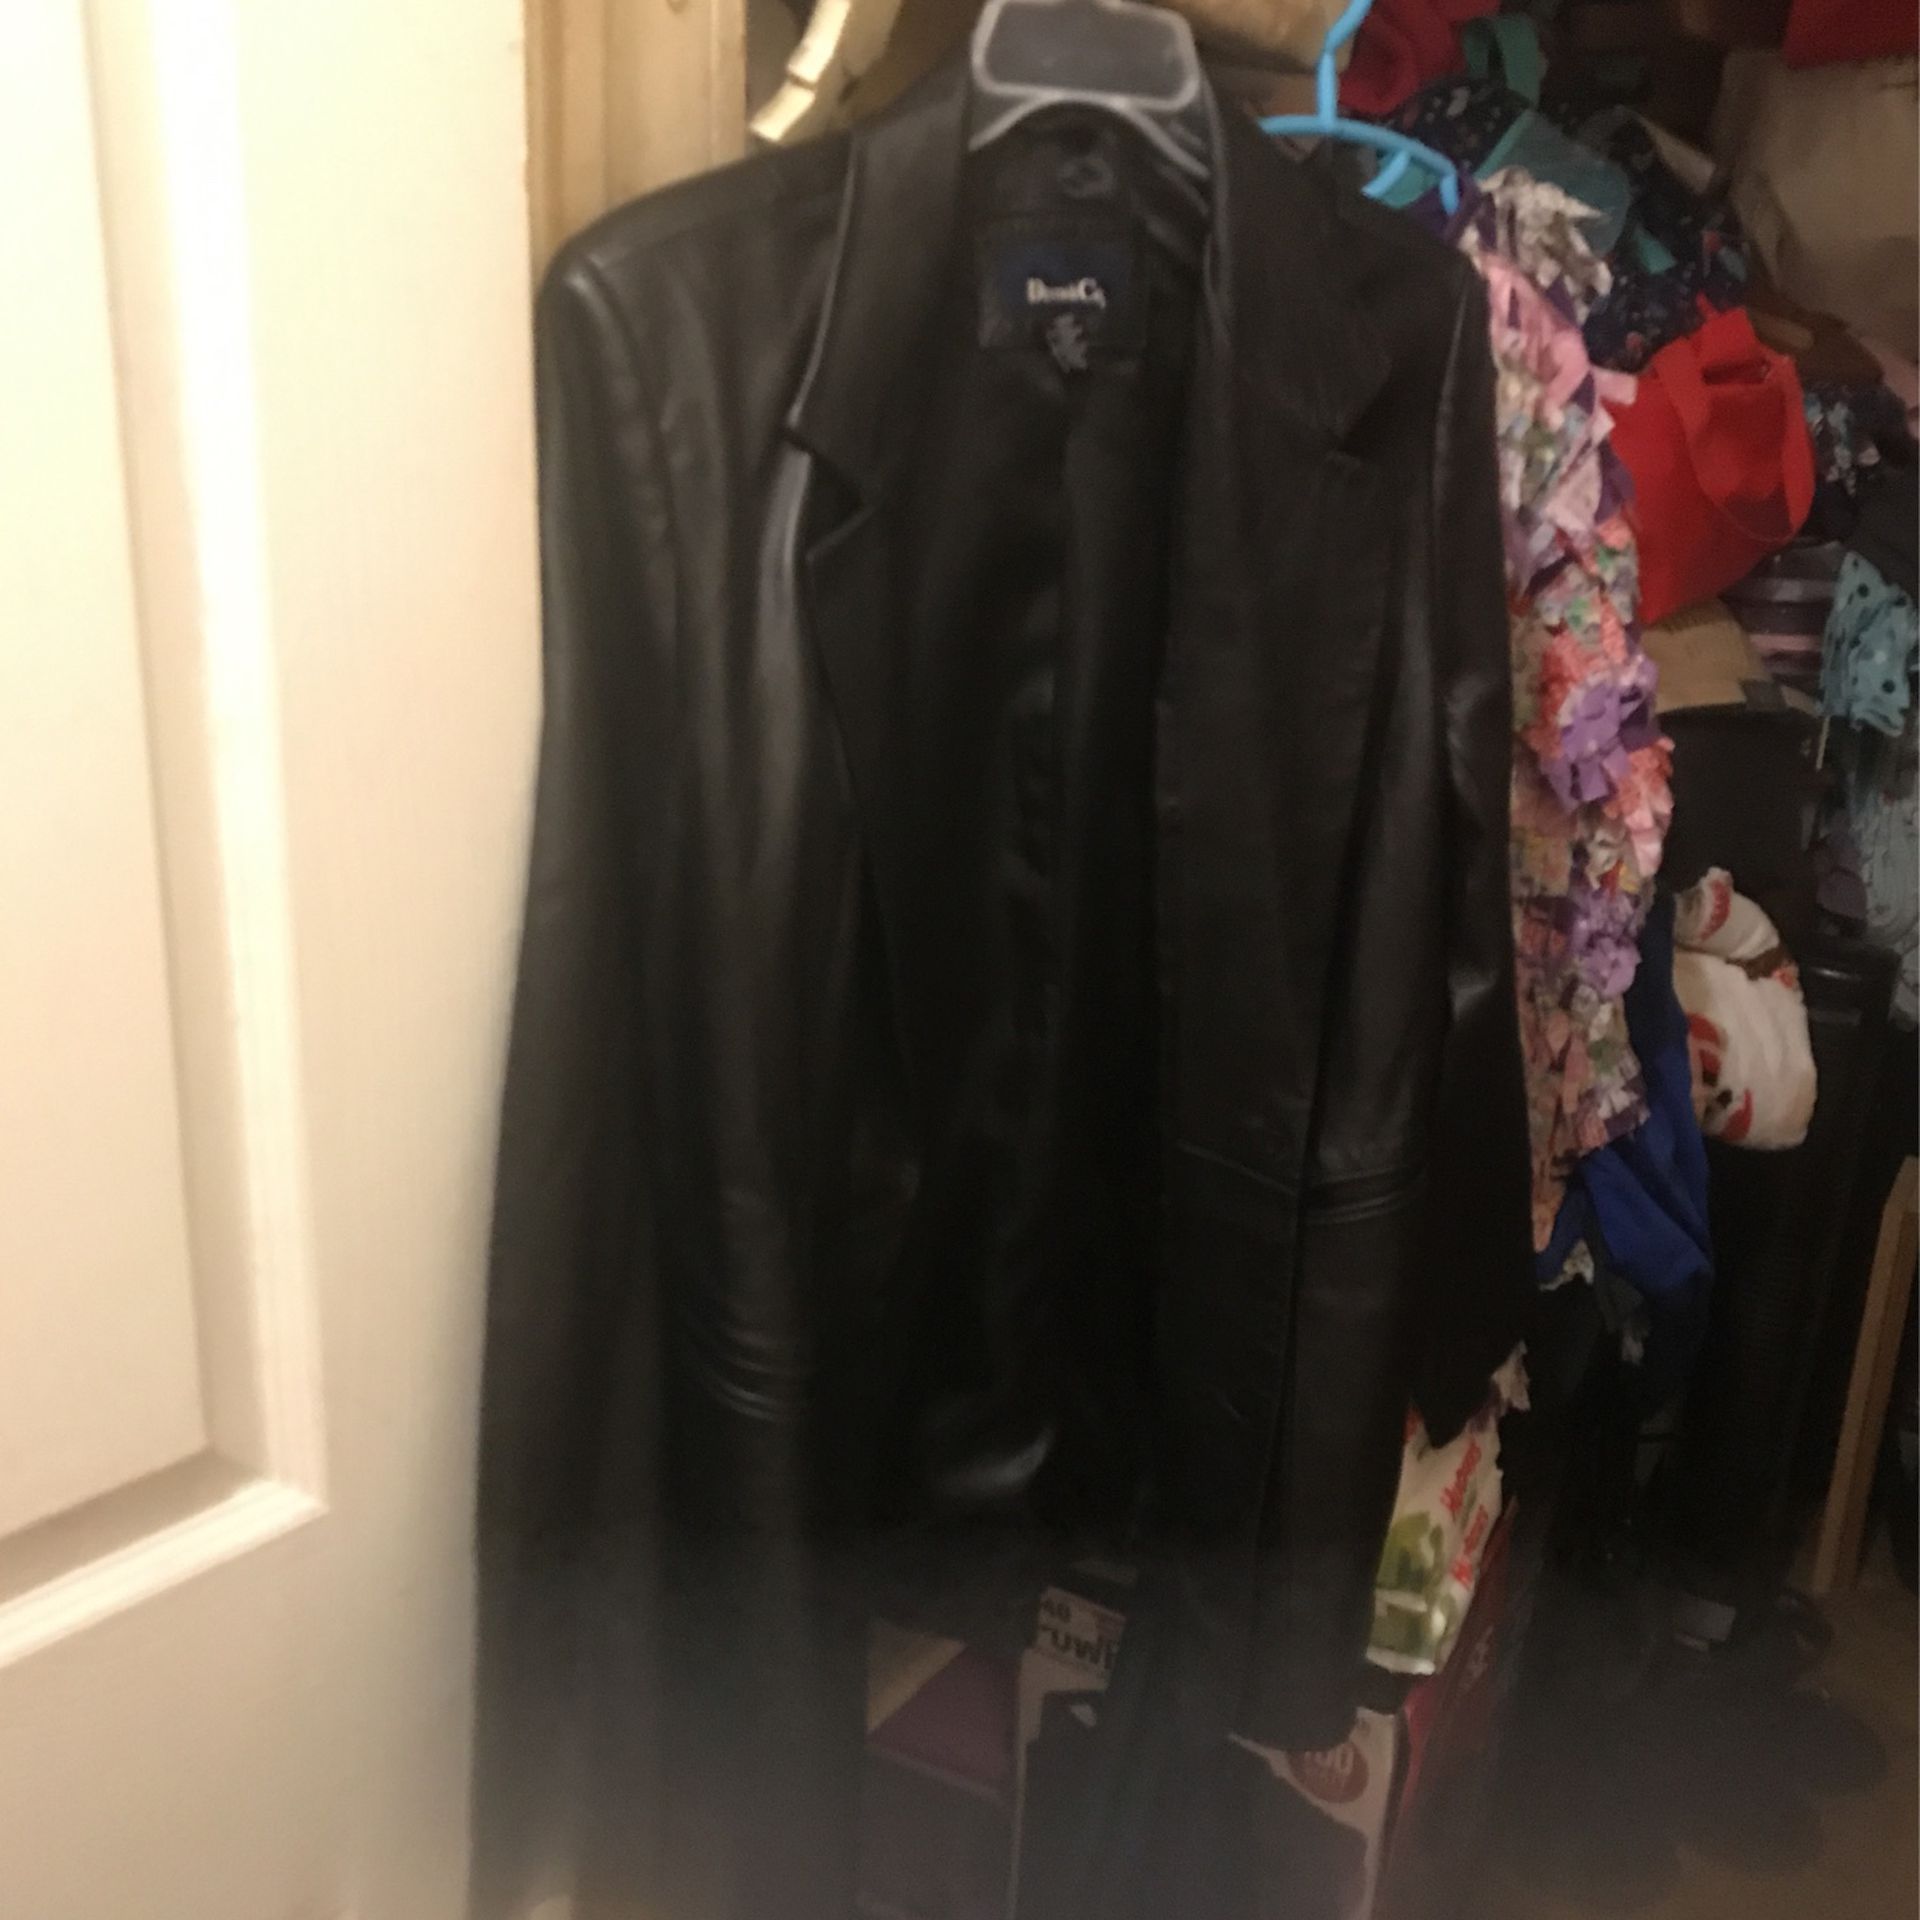 Leather jacket size large